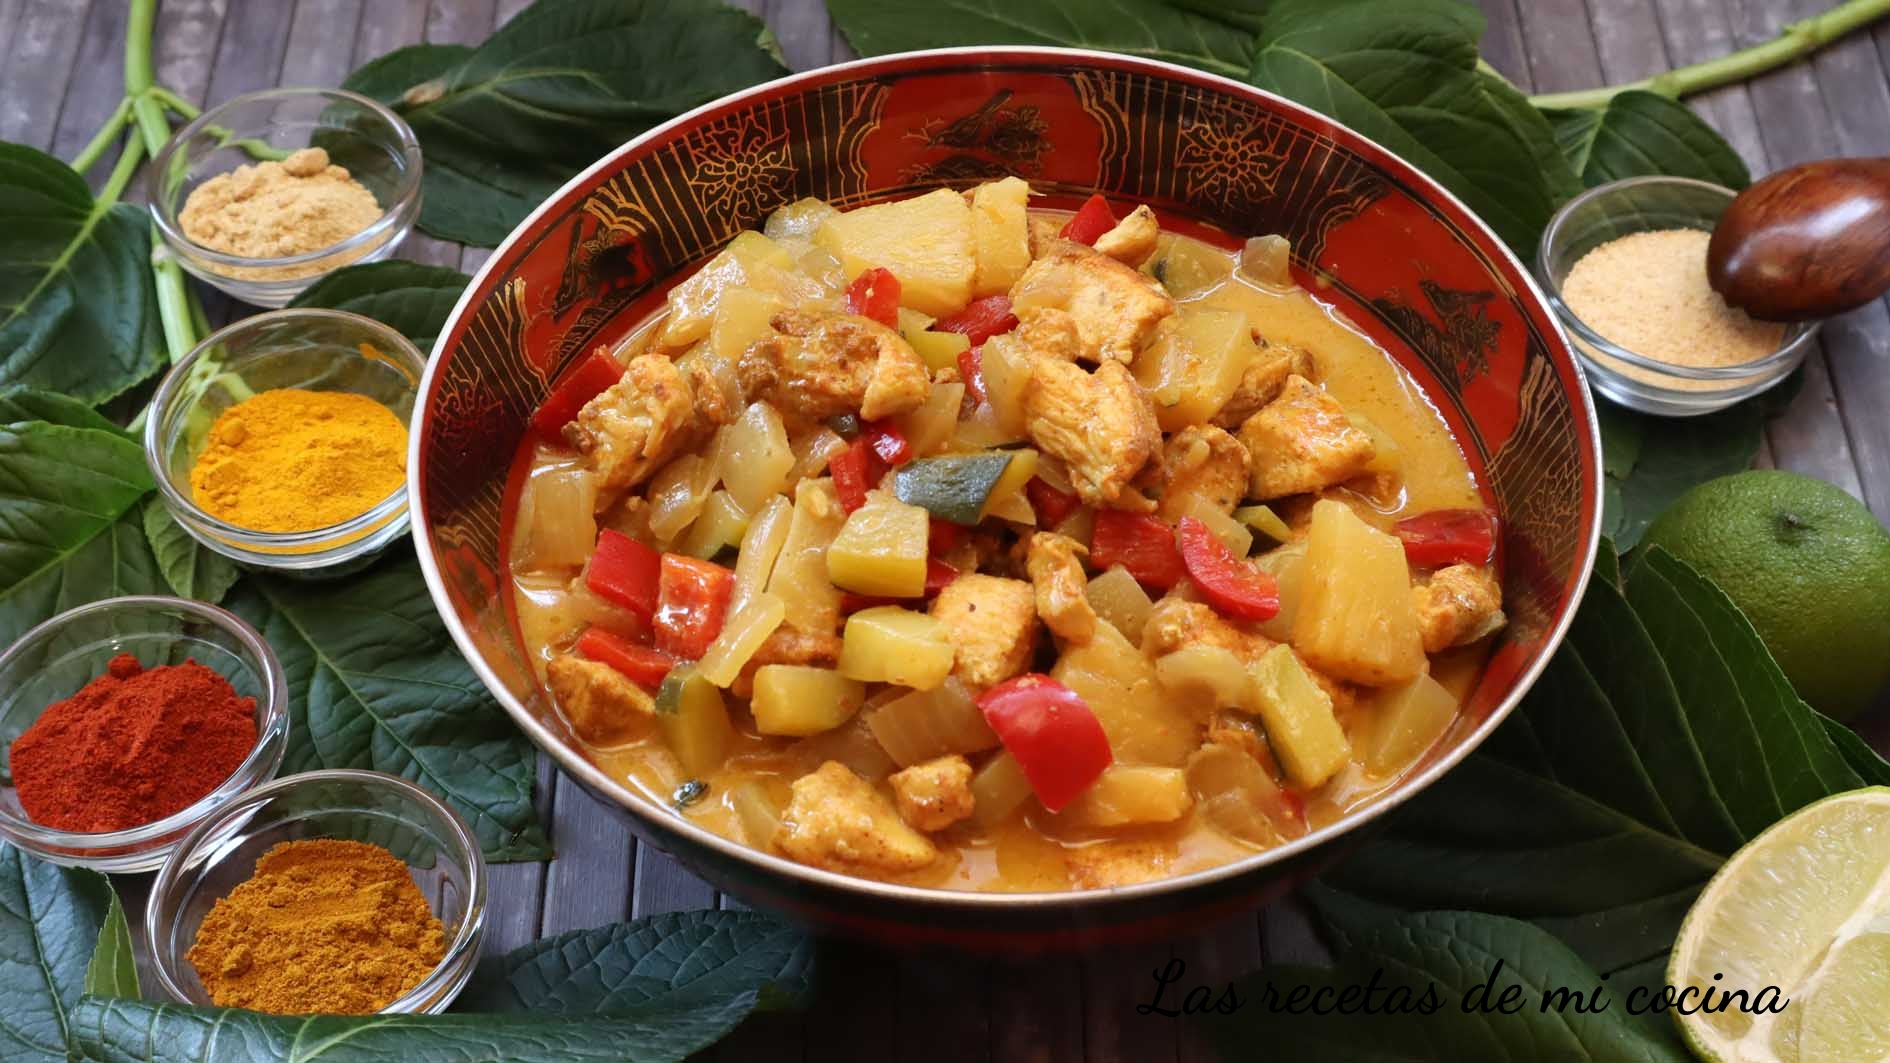 Pollo al curry con piña y leche de coco (VIDEORECETA)